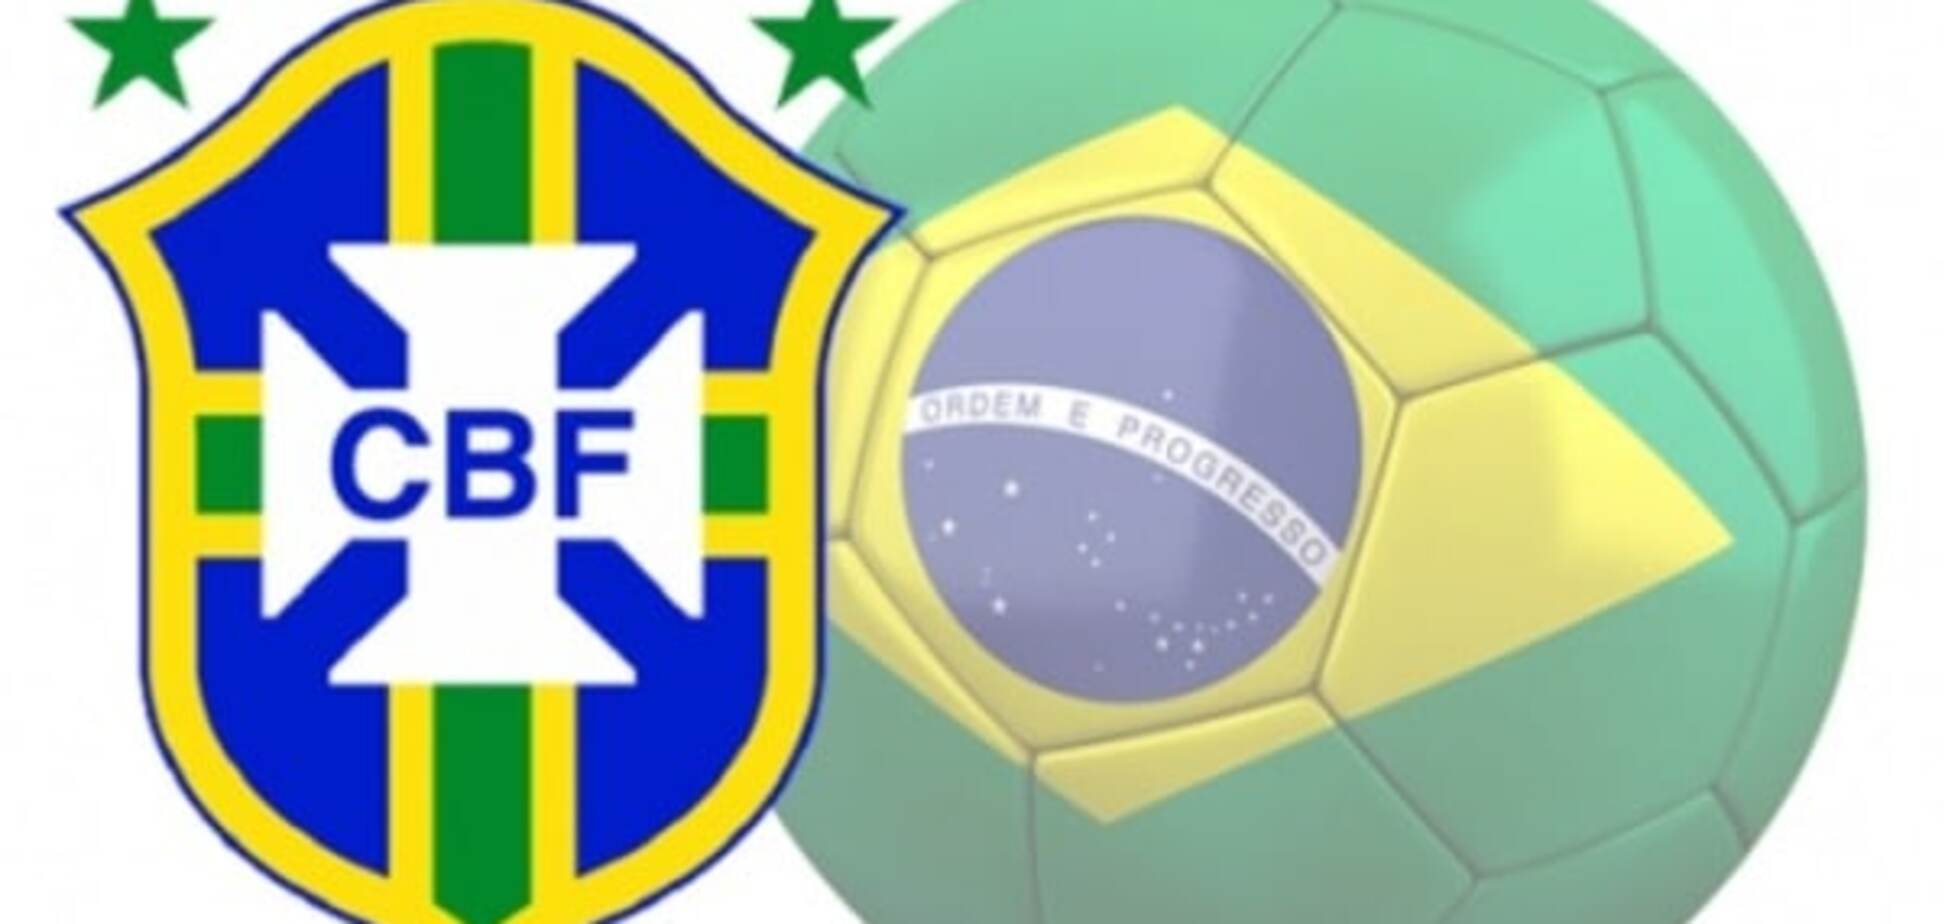 Бразильская конфедерация футбола